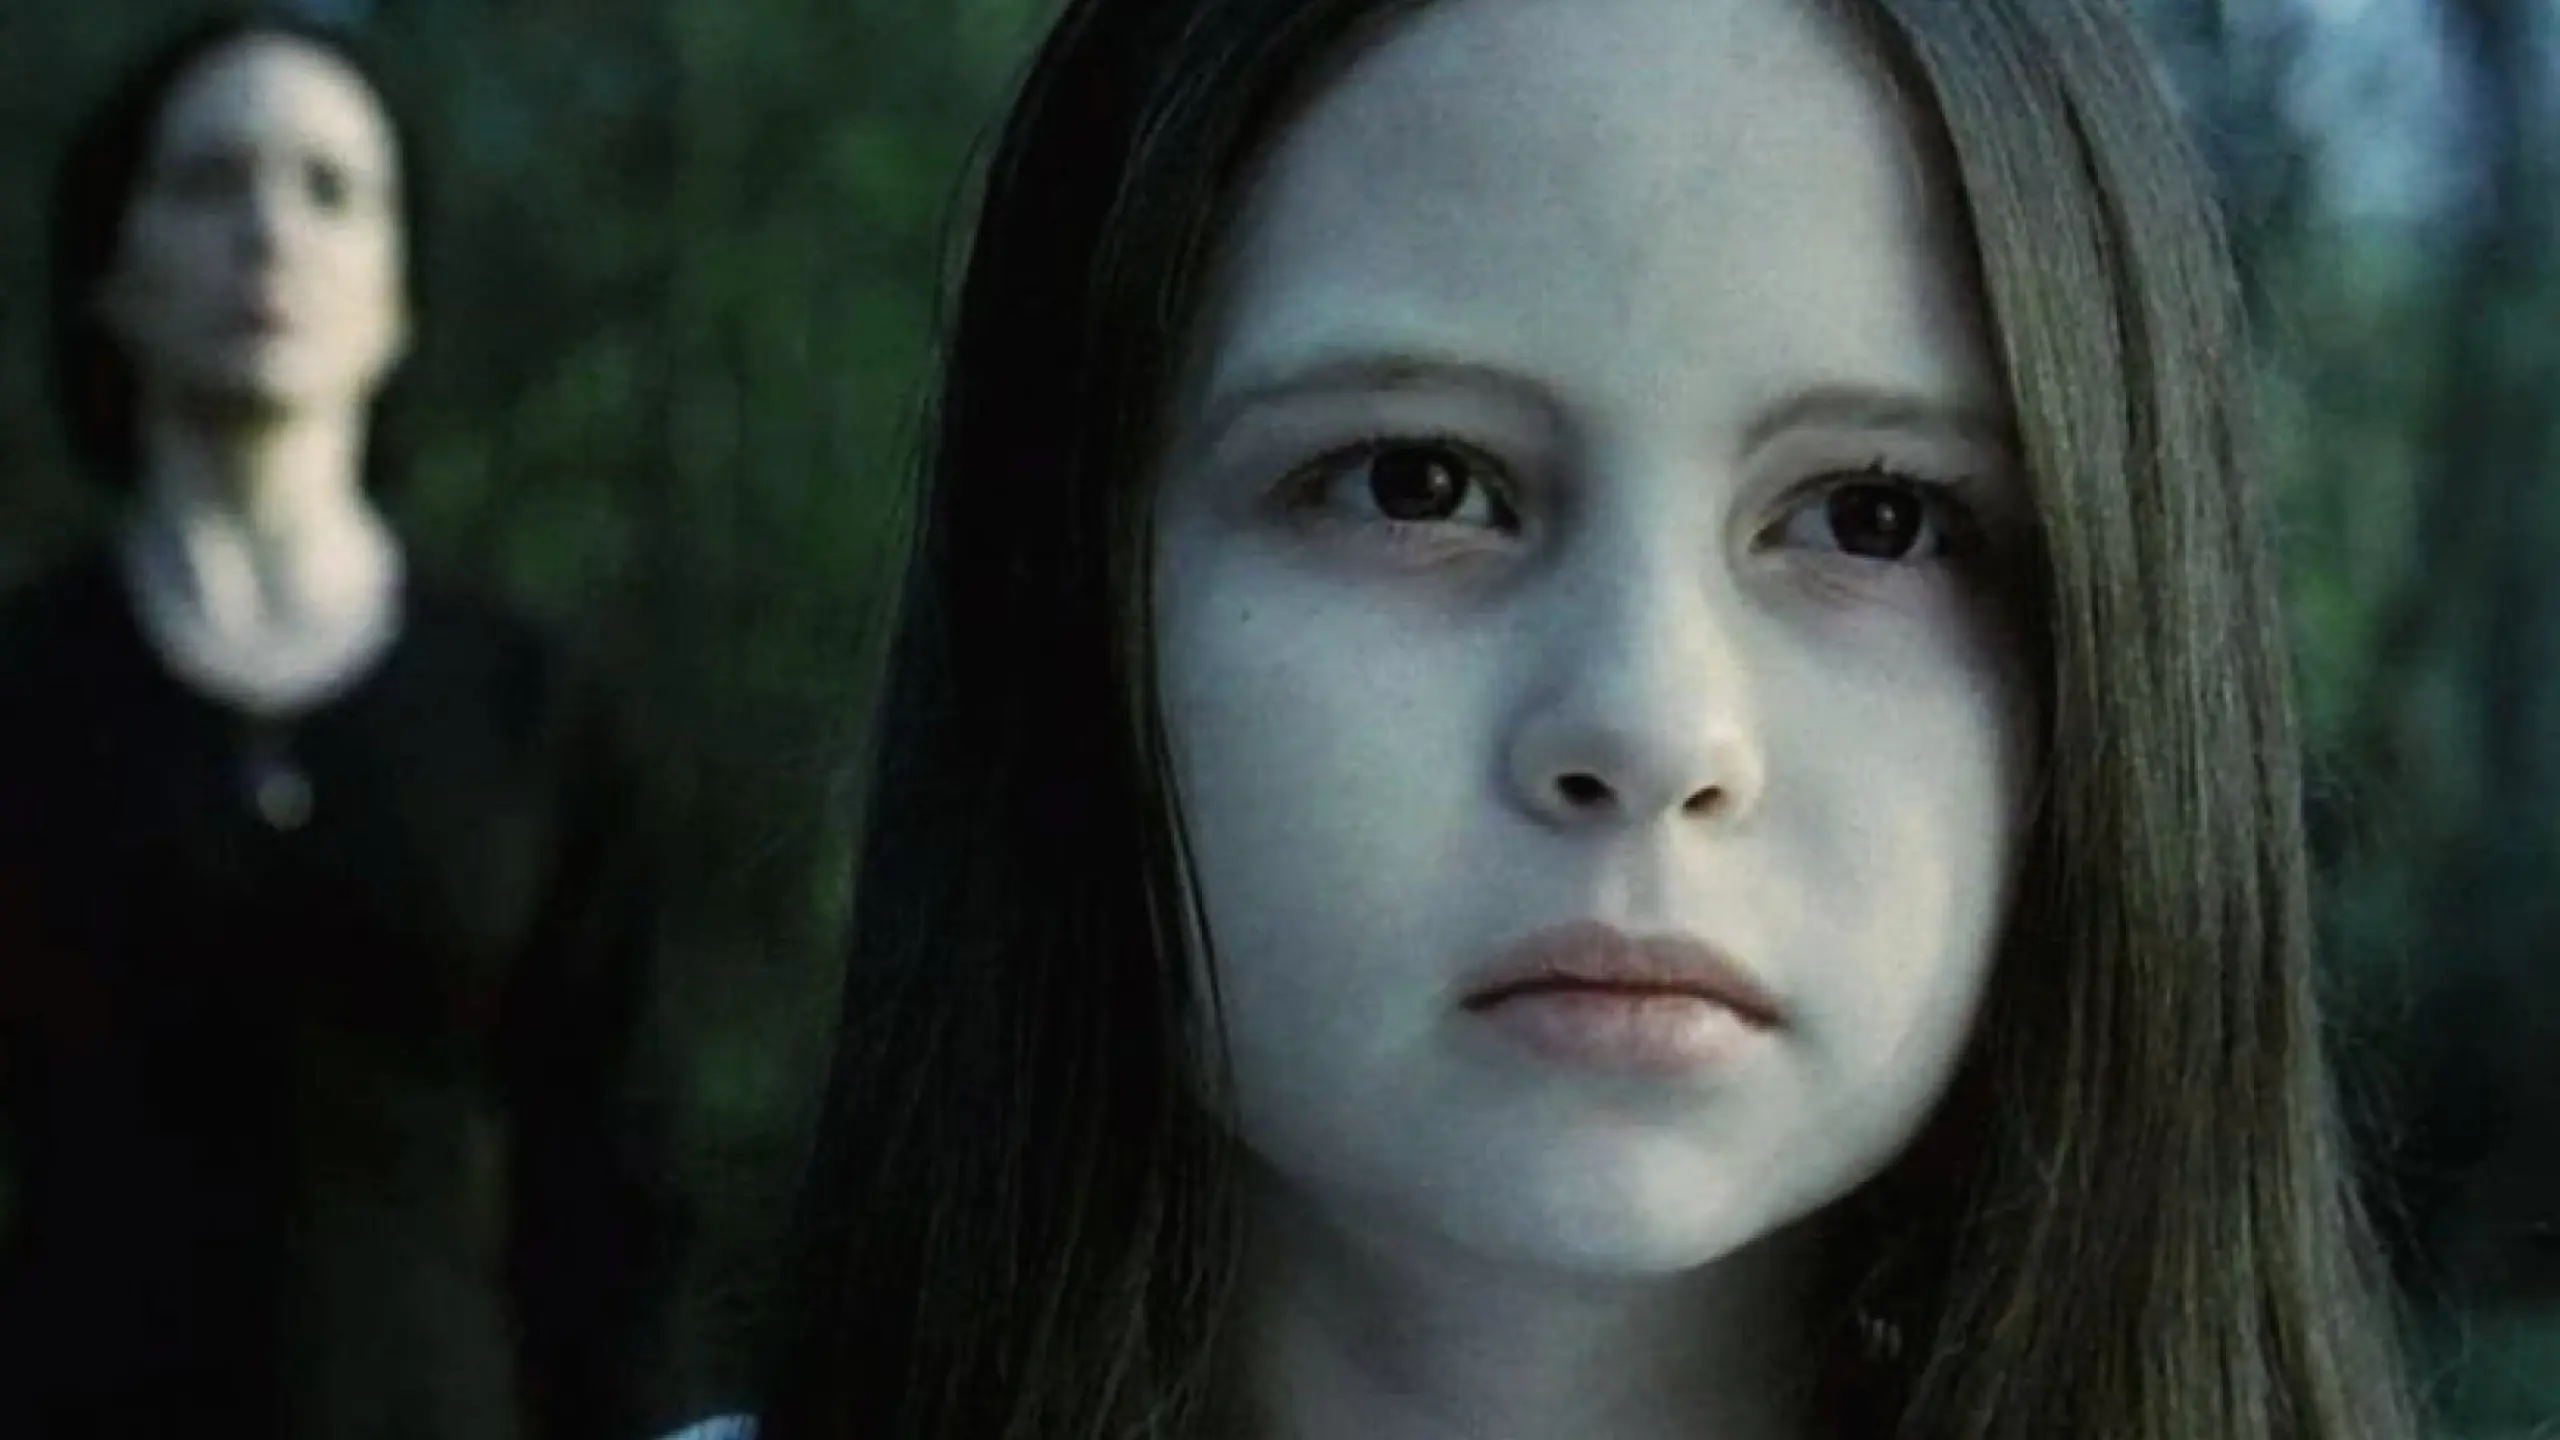 Kleines Mädchen, große Wirkung: Schauspielerin Daveigh Chase im Alter von 12 Jahren in der gruseligen Rolle von Samara in Gore Verbinskis kultigem Horrorfilm „Ring“ (2002)